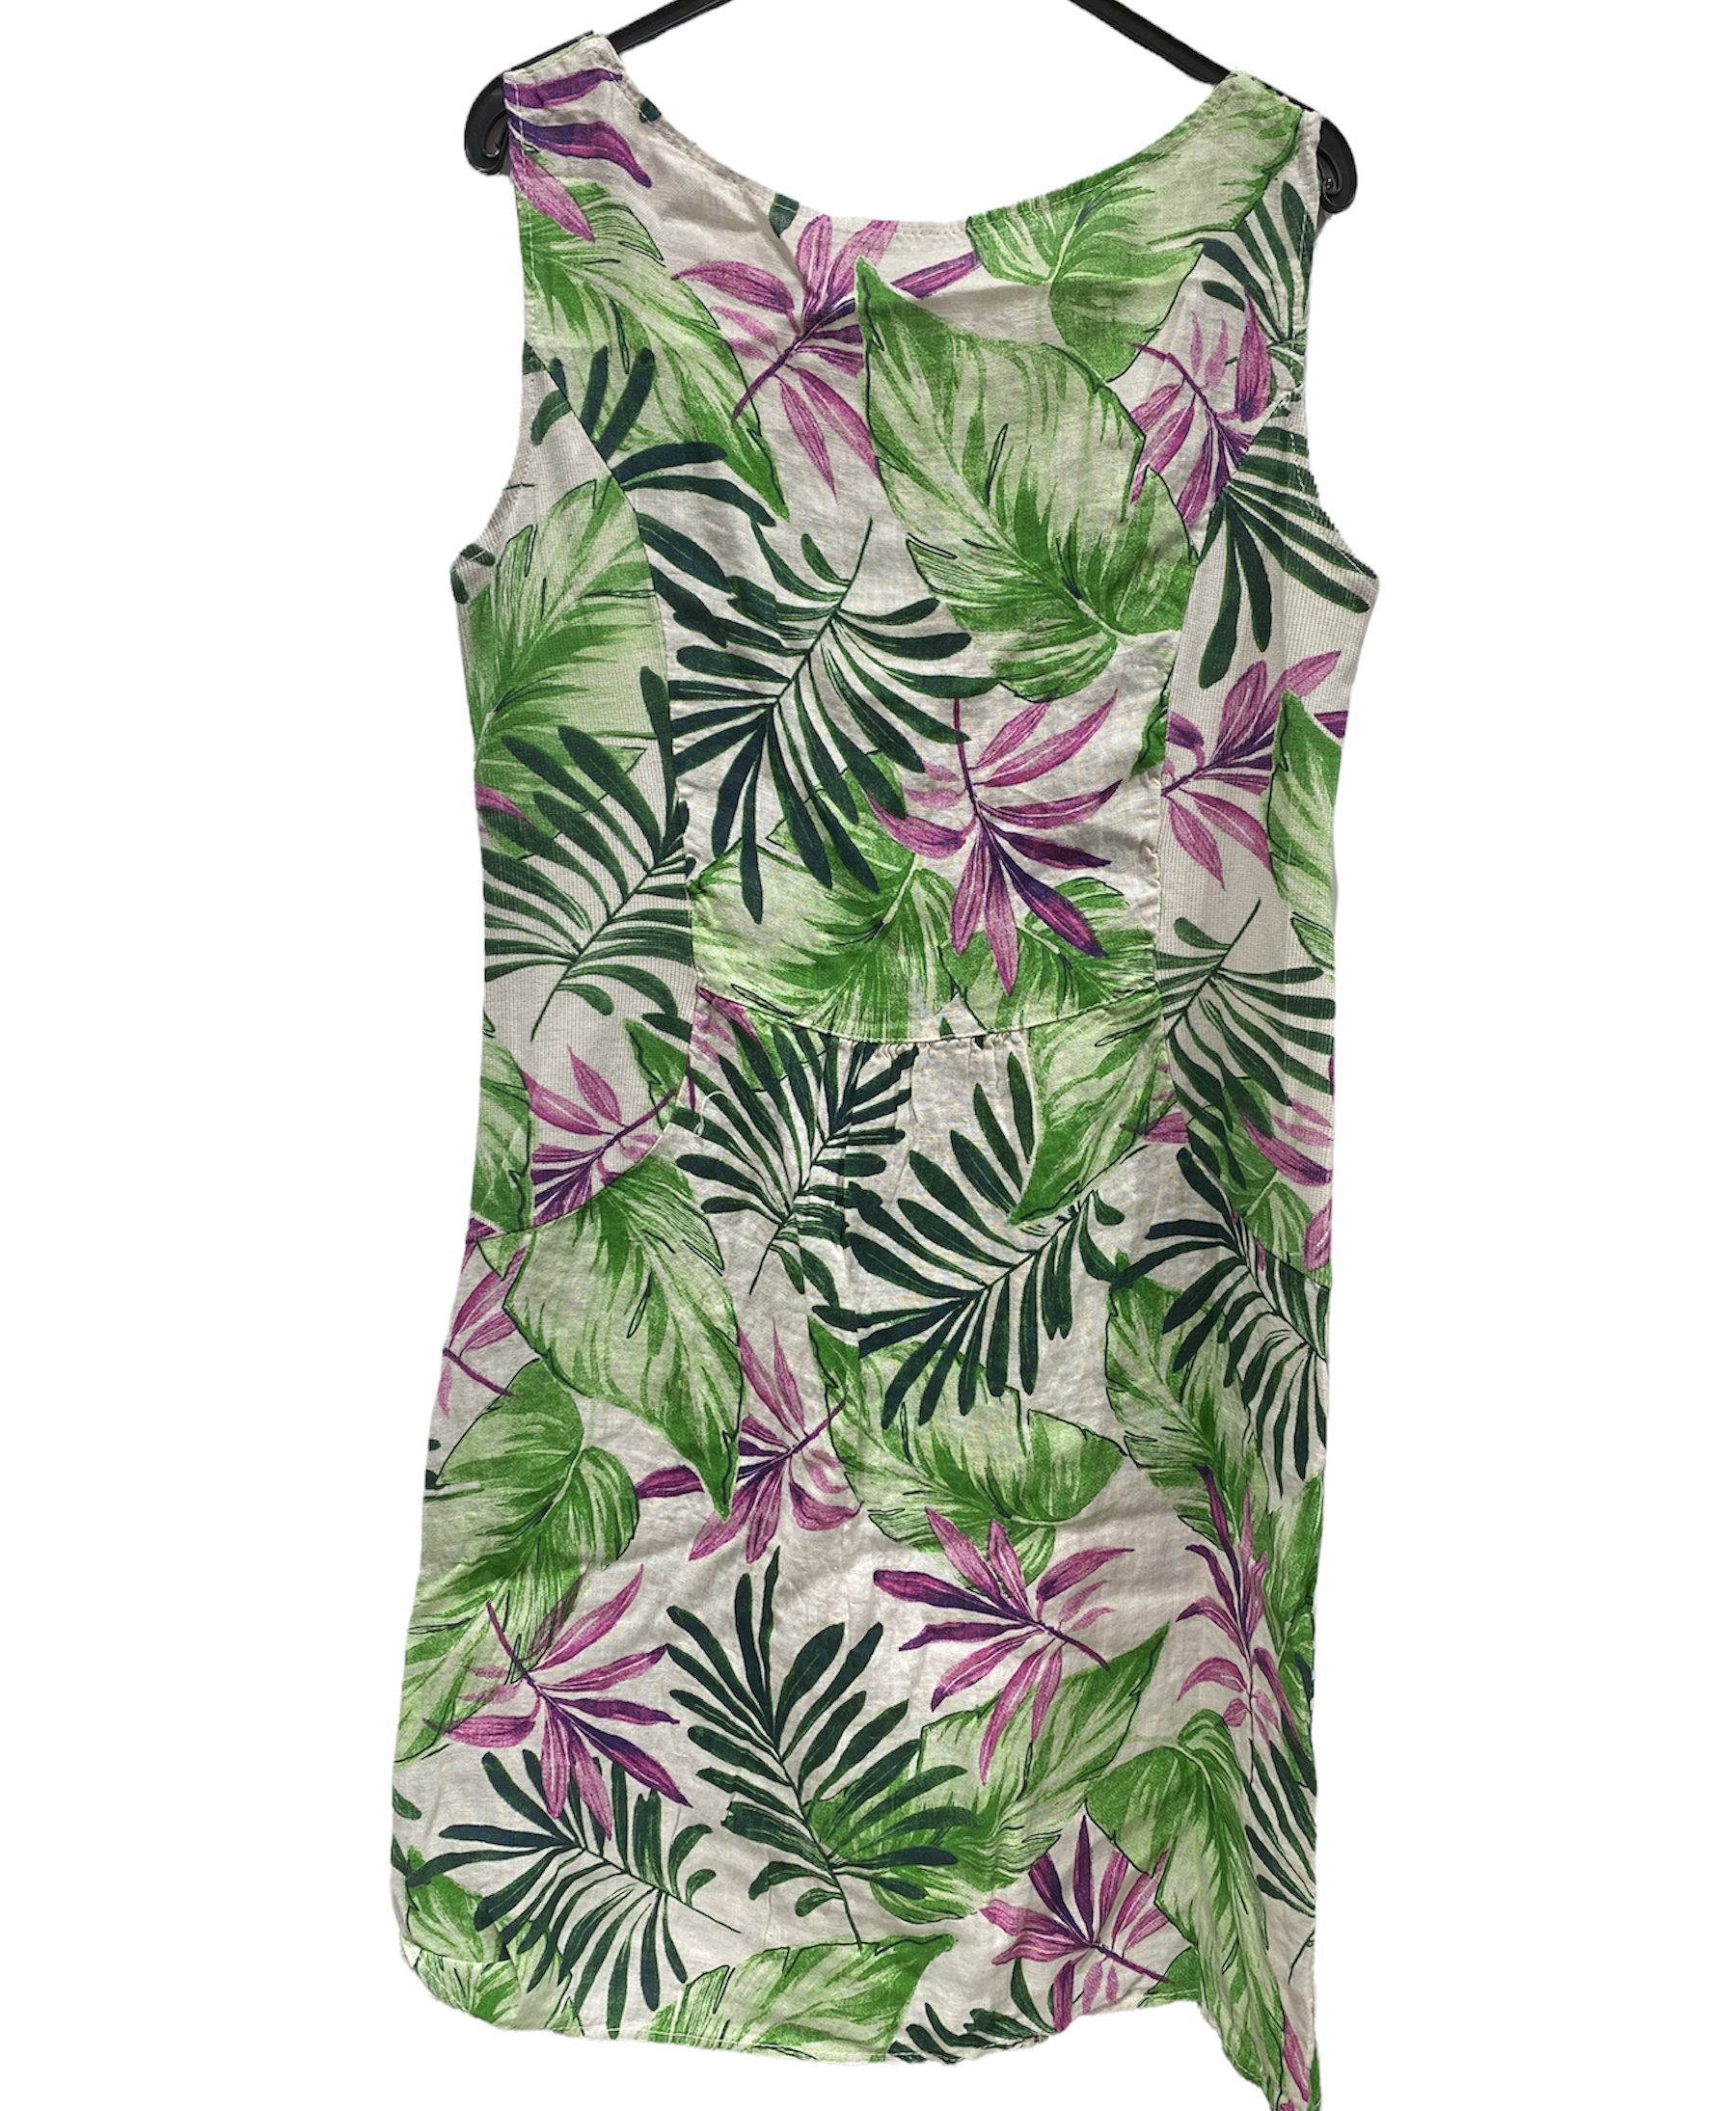 Puur linnen mouwloze jurk - steek zakken - getailleerd - kleur GROEN bloemen patroon - maat 42